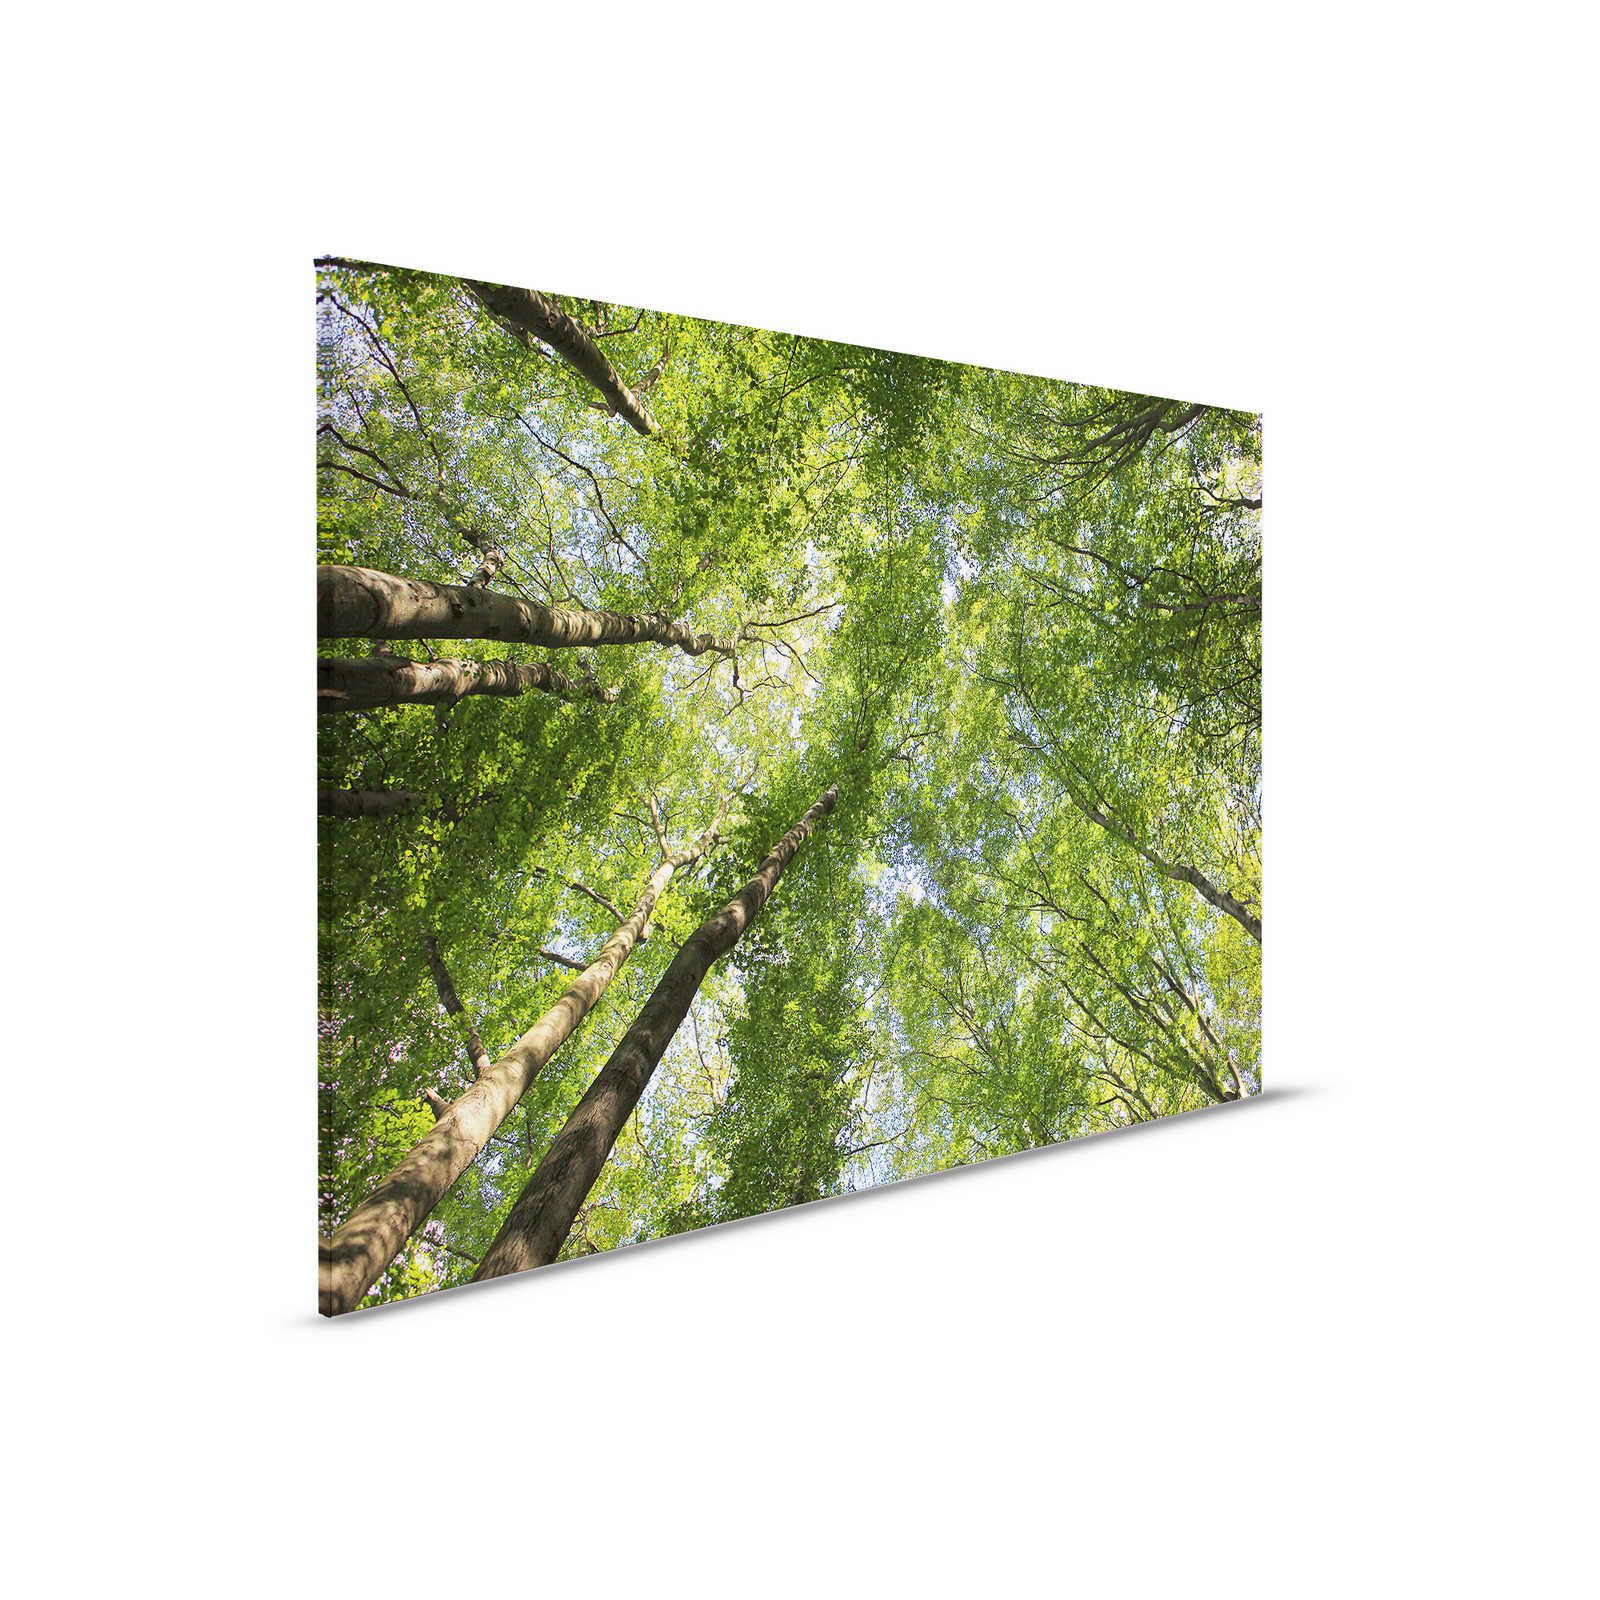 Cuadro lienzo follaje con copas de árboles de bosque caducifolio - 0,90 m x 0,60 m
